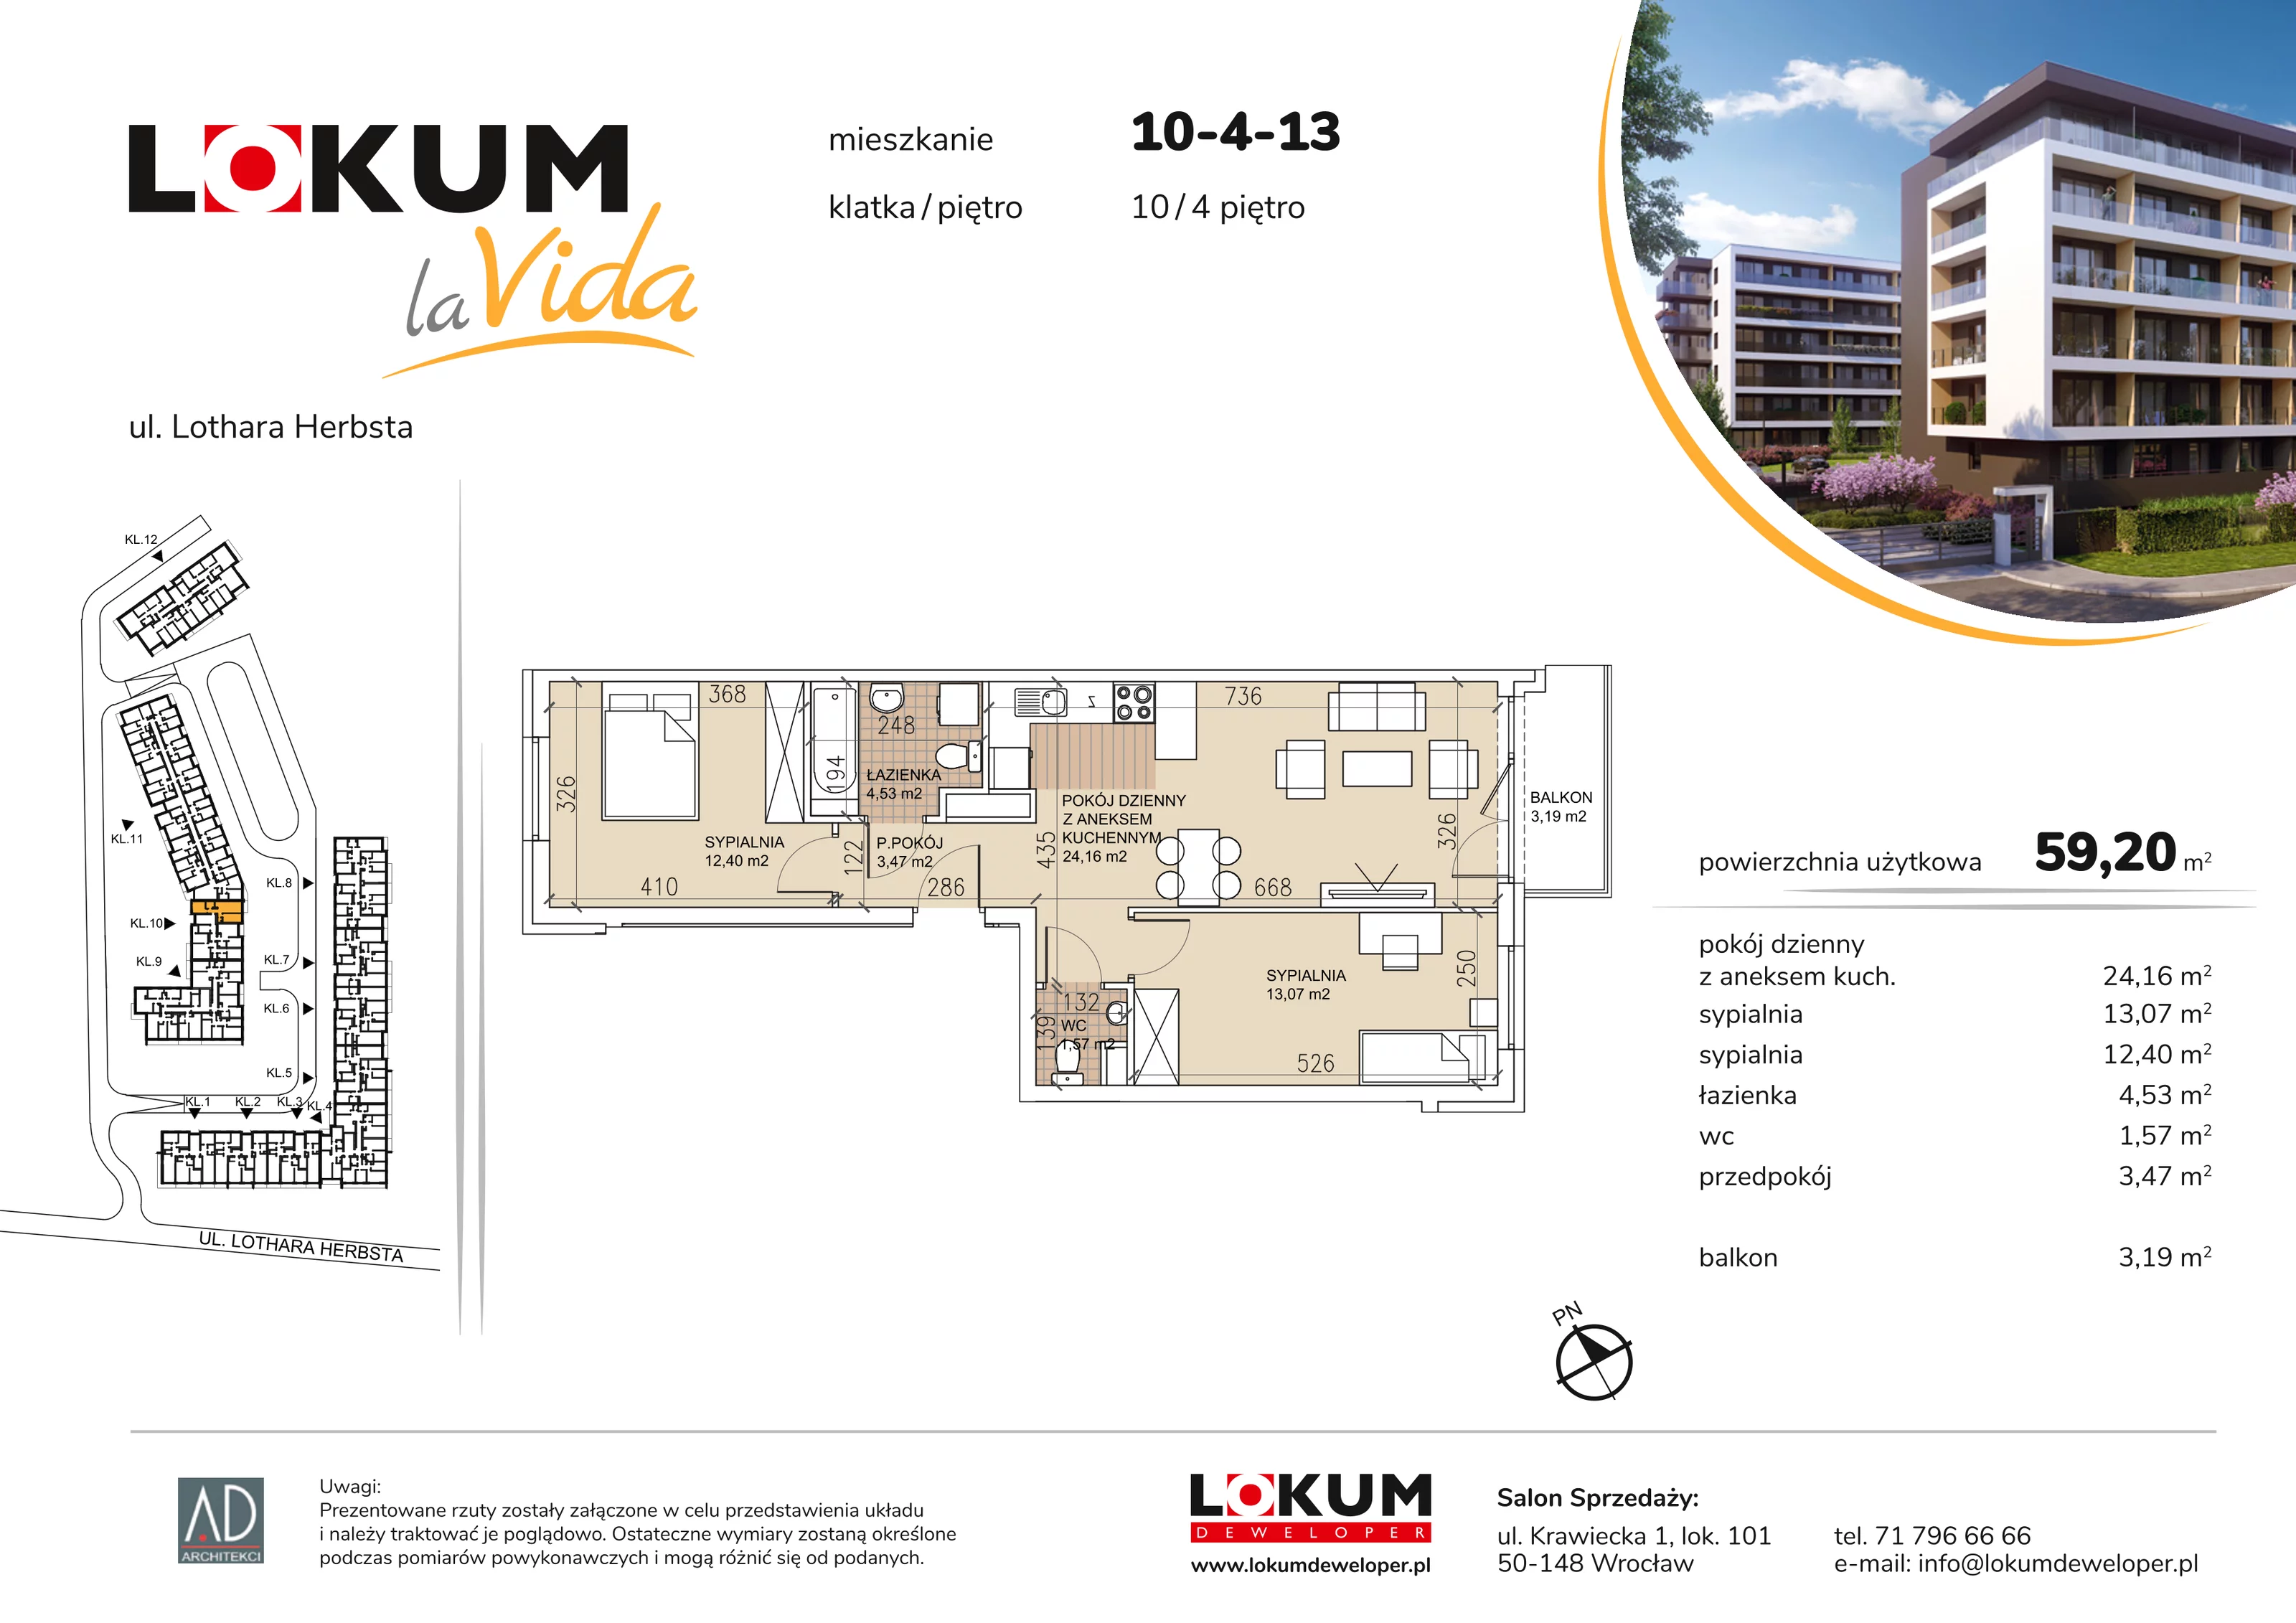 Mieszkanie 59,20 m², piętro 4, oferta nr 10-4-13, Lokum la Vida, Wrocław, Sołtysowice, ul. Lothara Herbsta